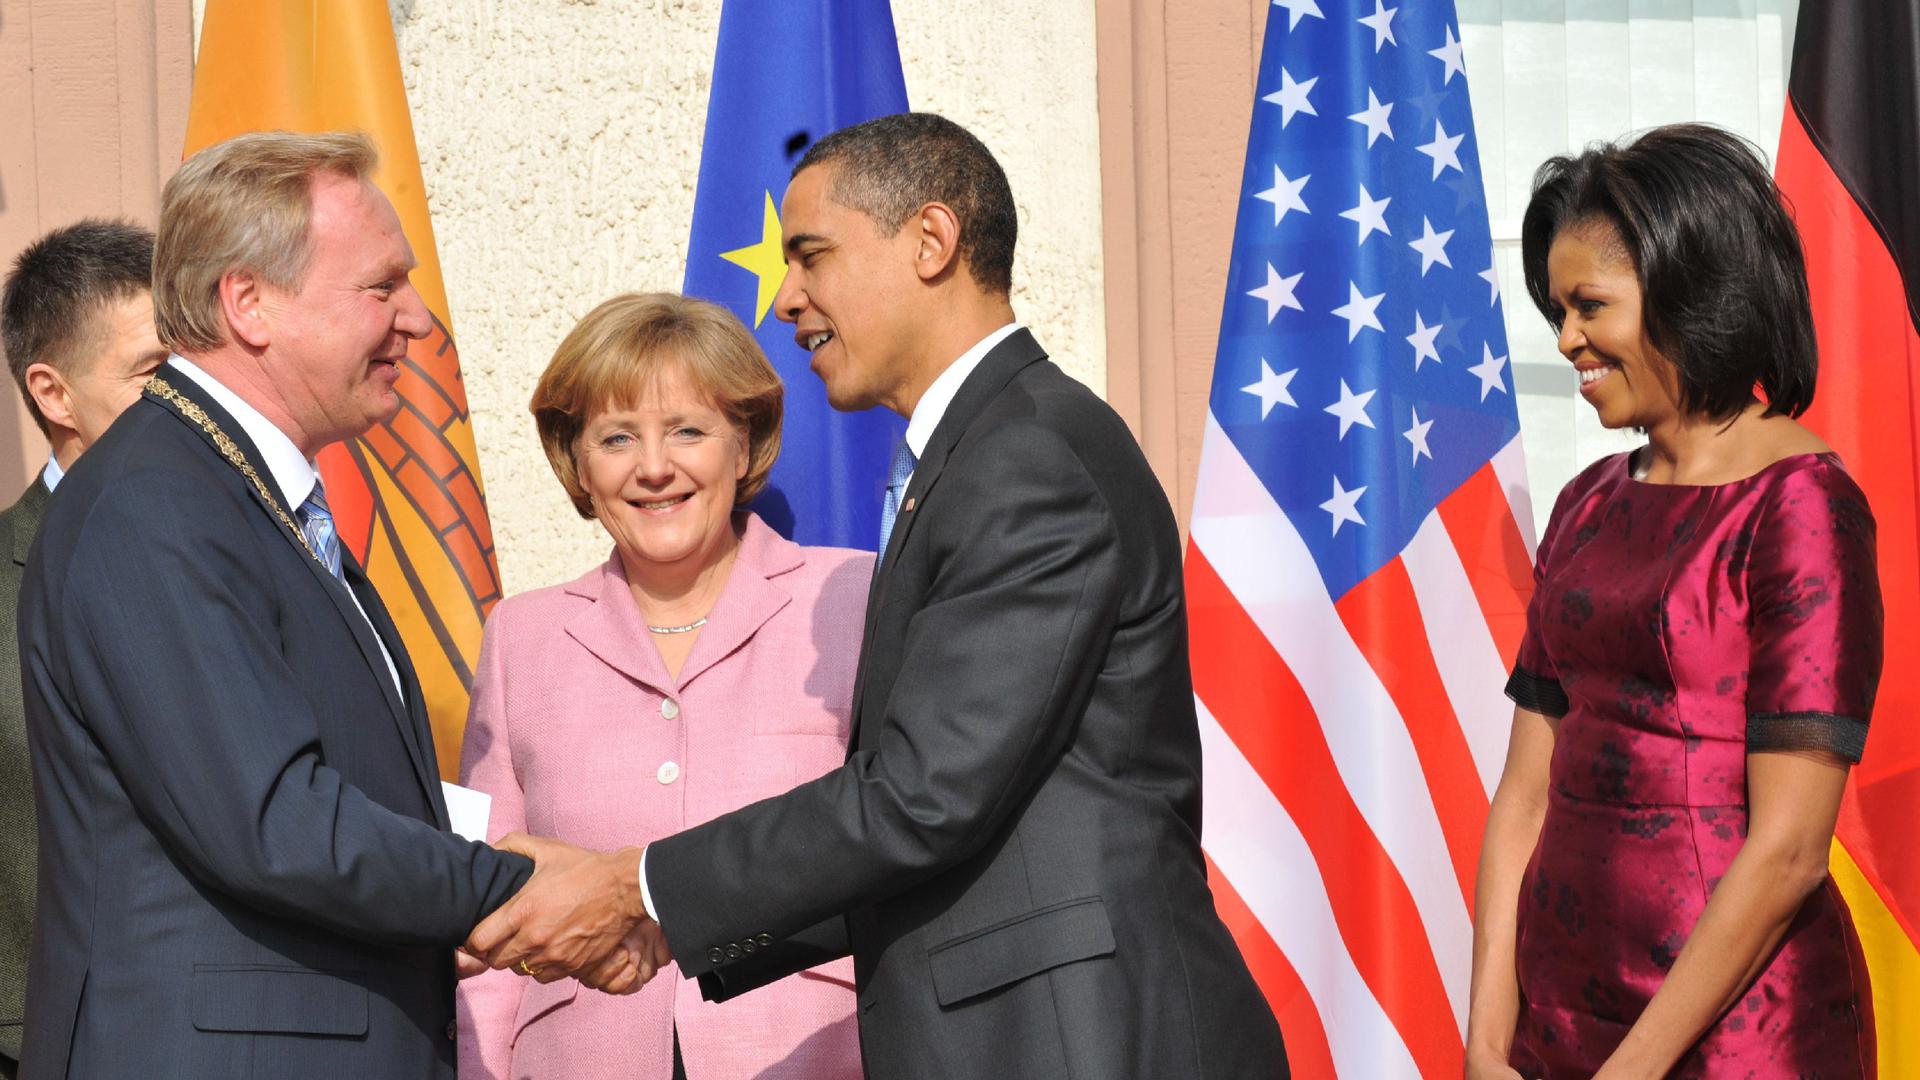 US-Präsident Barack Obama begrüßt im Hof des Rathauses von Baden-Baden den Oberbürgermeister der Stadt, Wolfgang Gerstner. Beim Empfang zum Nato-Gipfel hat Kanzlerin Angela Merkel ihren Mann Joachim Sauer dabei und Obama seine Frau Michelle.